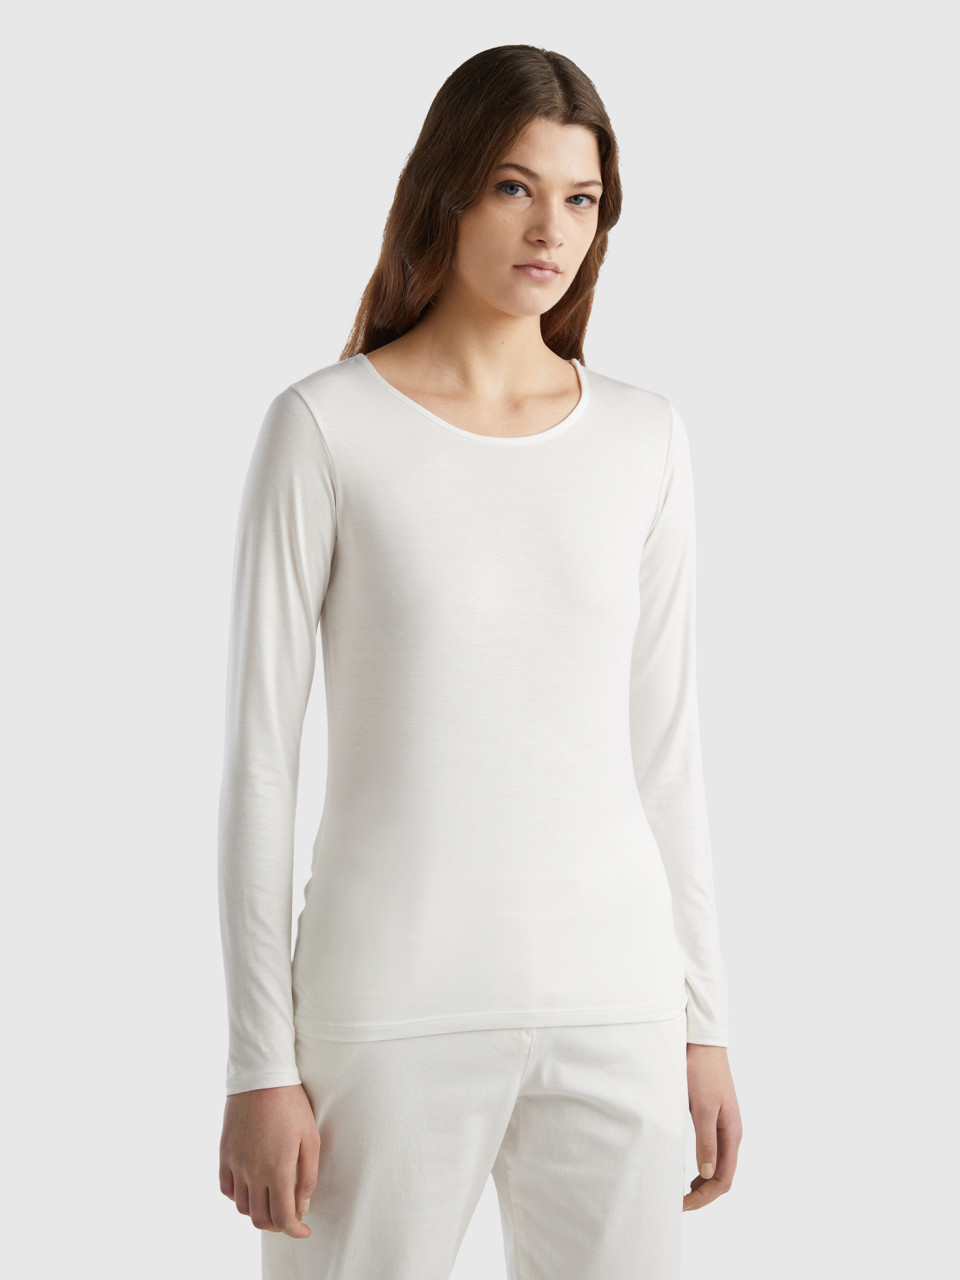 Benetton, Camiseta De Viscosa Sostenible Elástica, Blanco Crema, Mujer